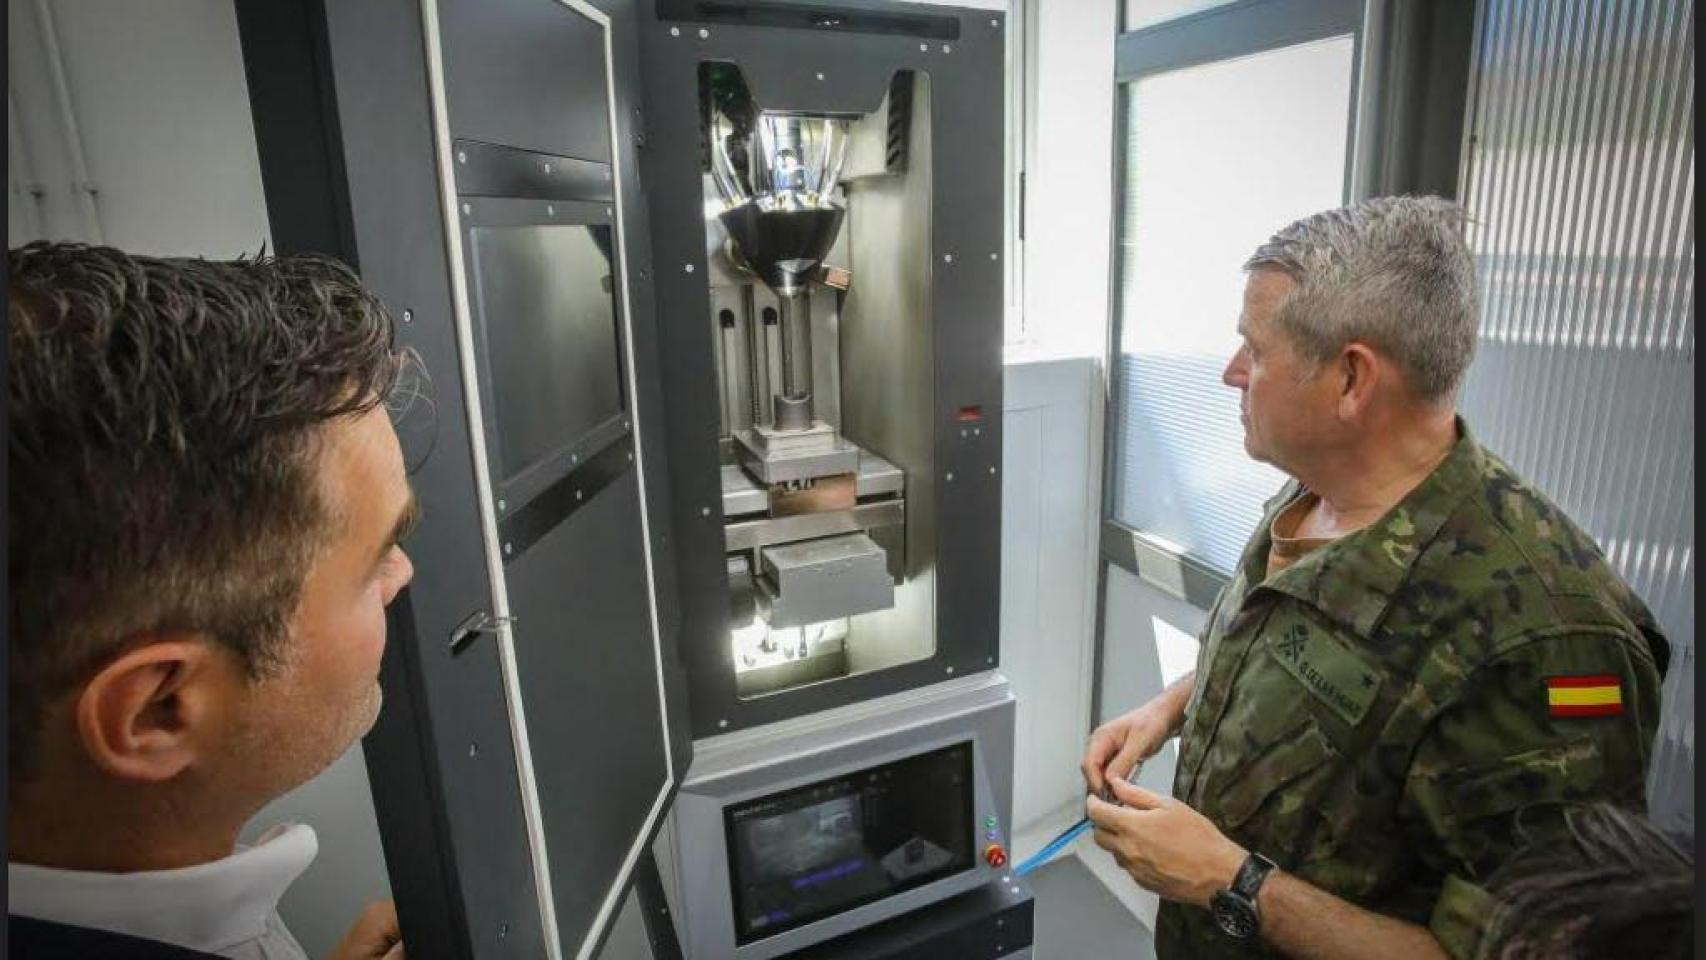 Primer taller de fabricación aditiva del Ejército de Tierra, el pasado 27 de mayo en el centro El Higuerón de Córdoba.